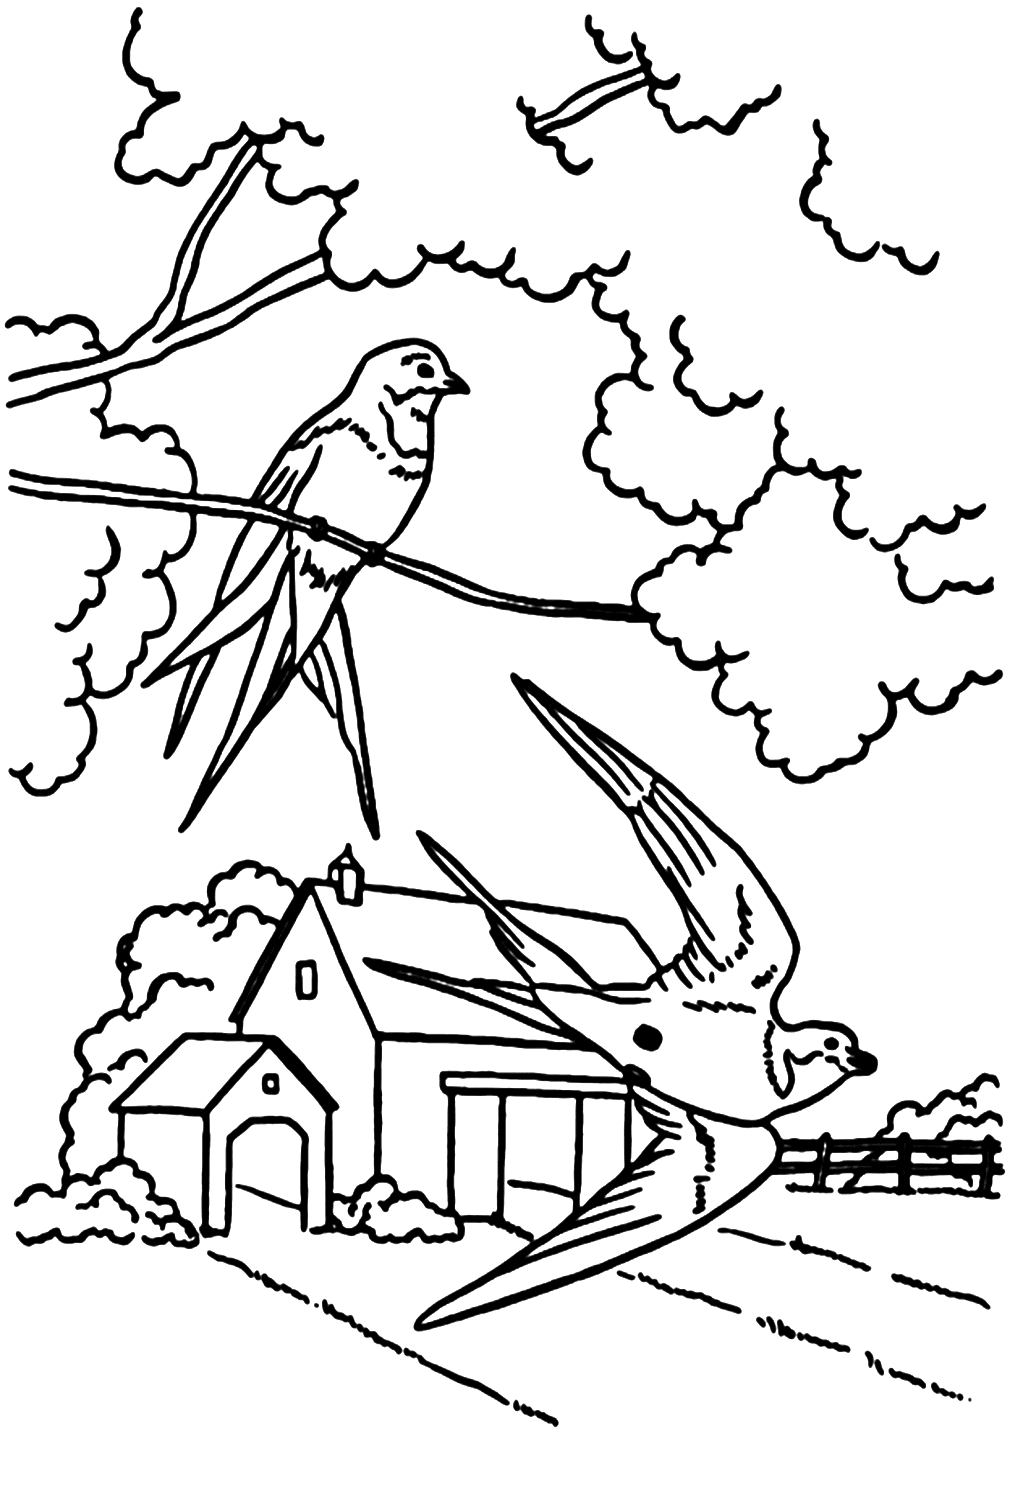 Página para colorear de golondrina en la granja de Swallow